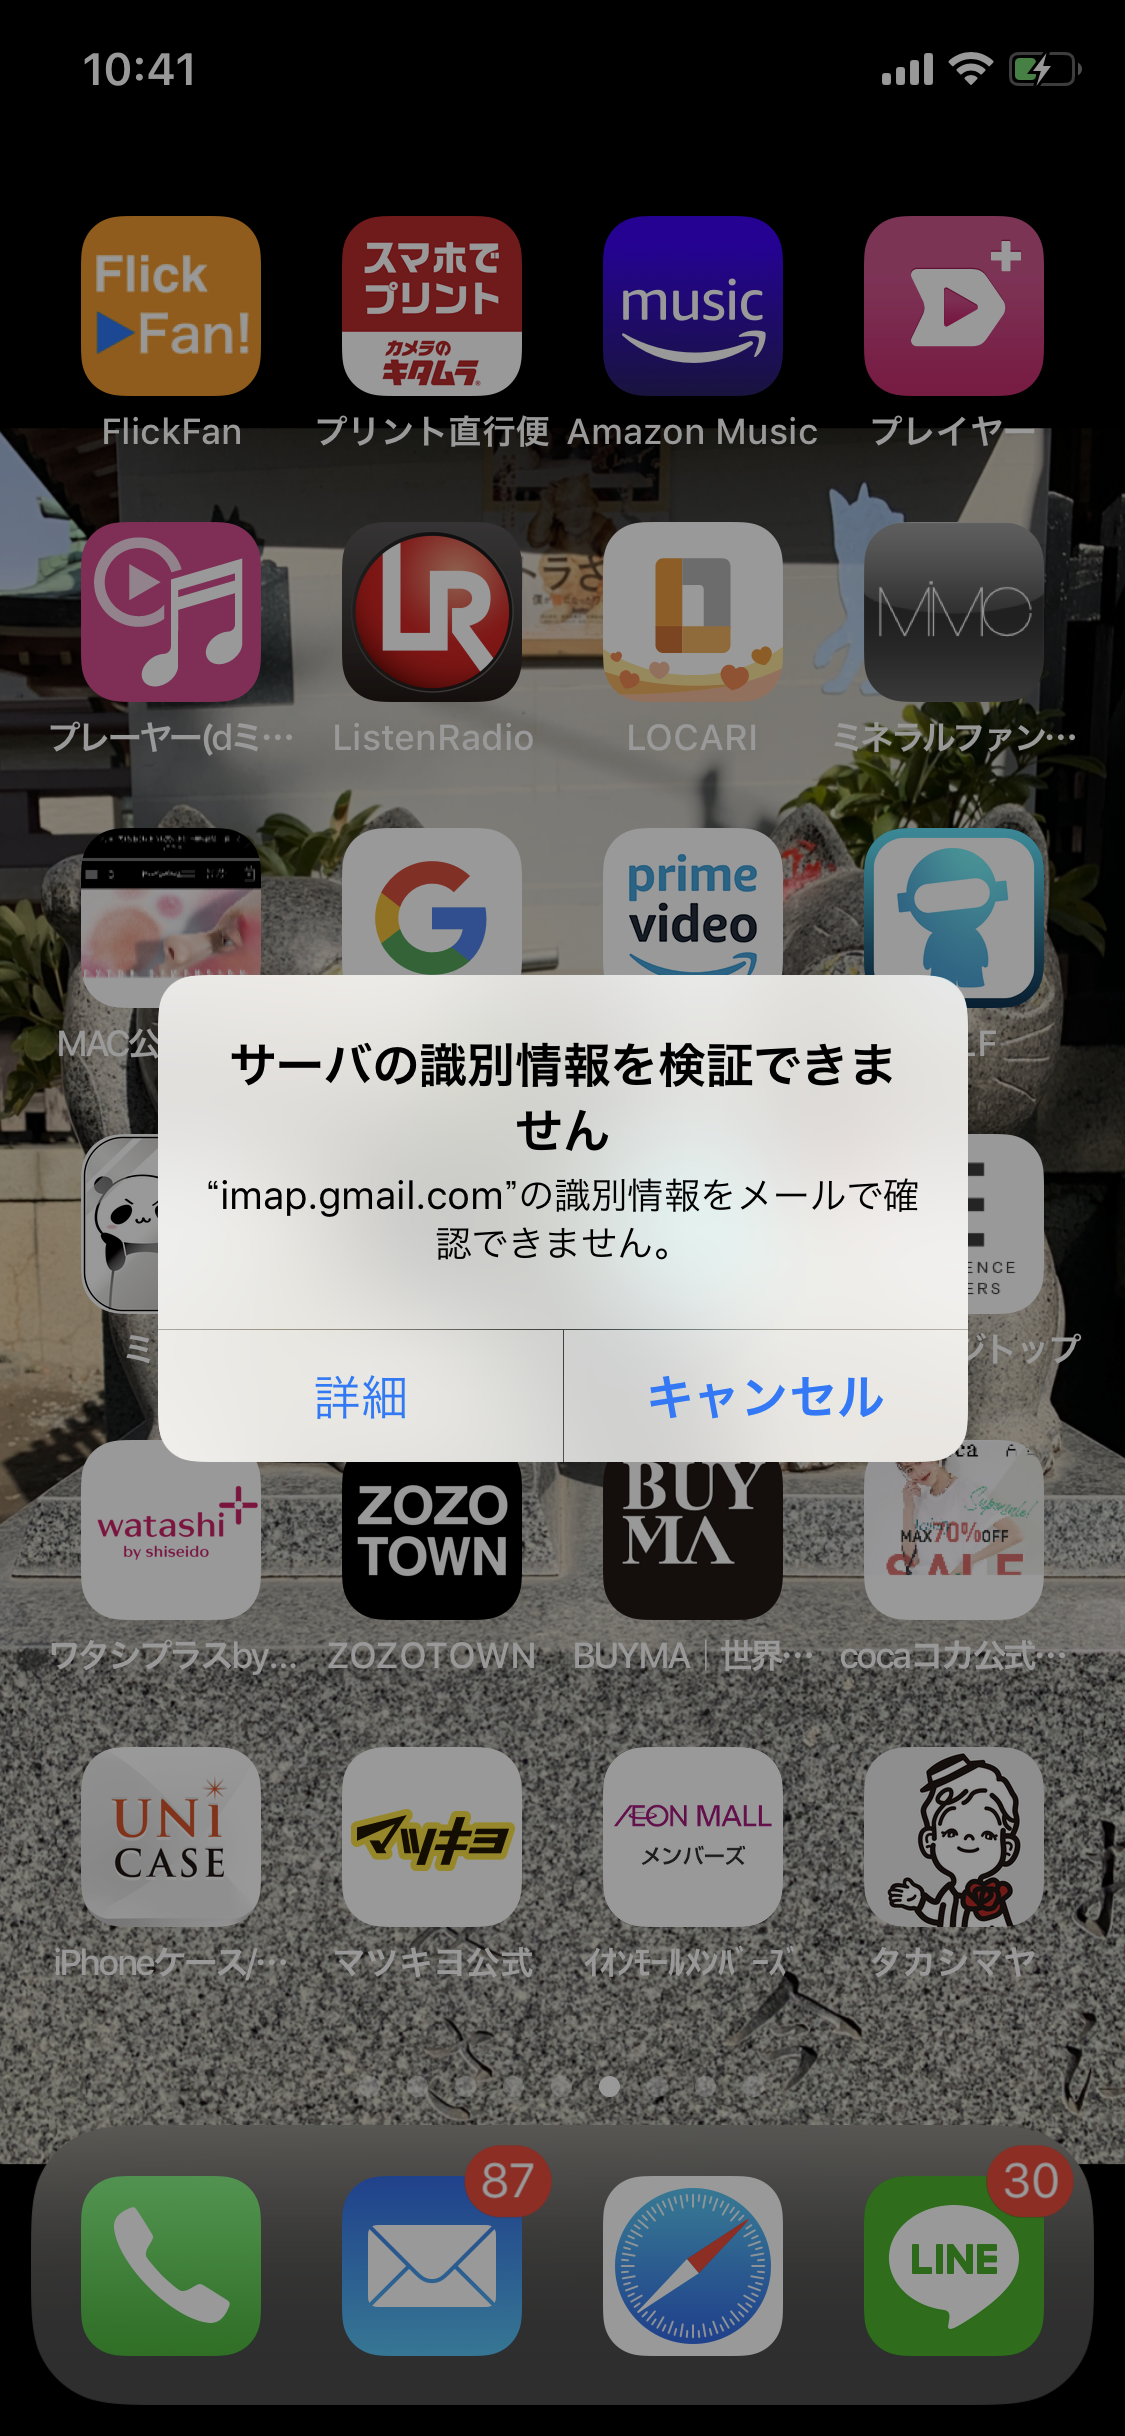 Imap Gmail Comのサーバーの識別情報を検証できませんと頻繁に出てしまう時の対処方法を教えて下さい Gmail コミュニティ